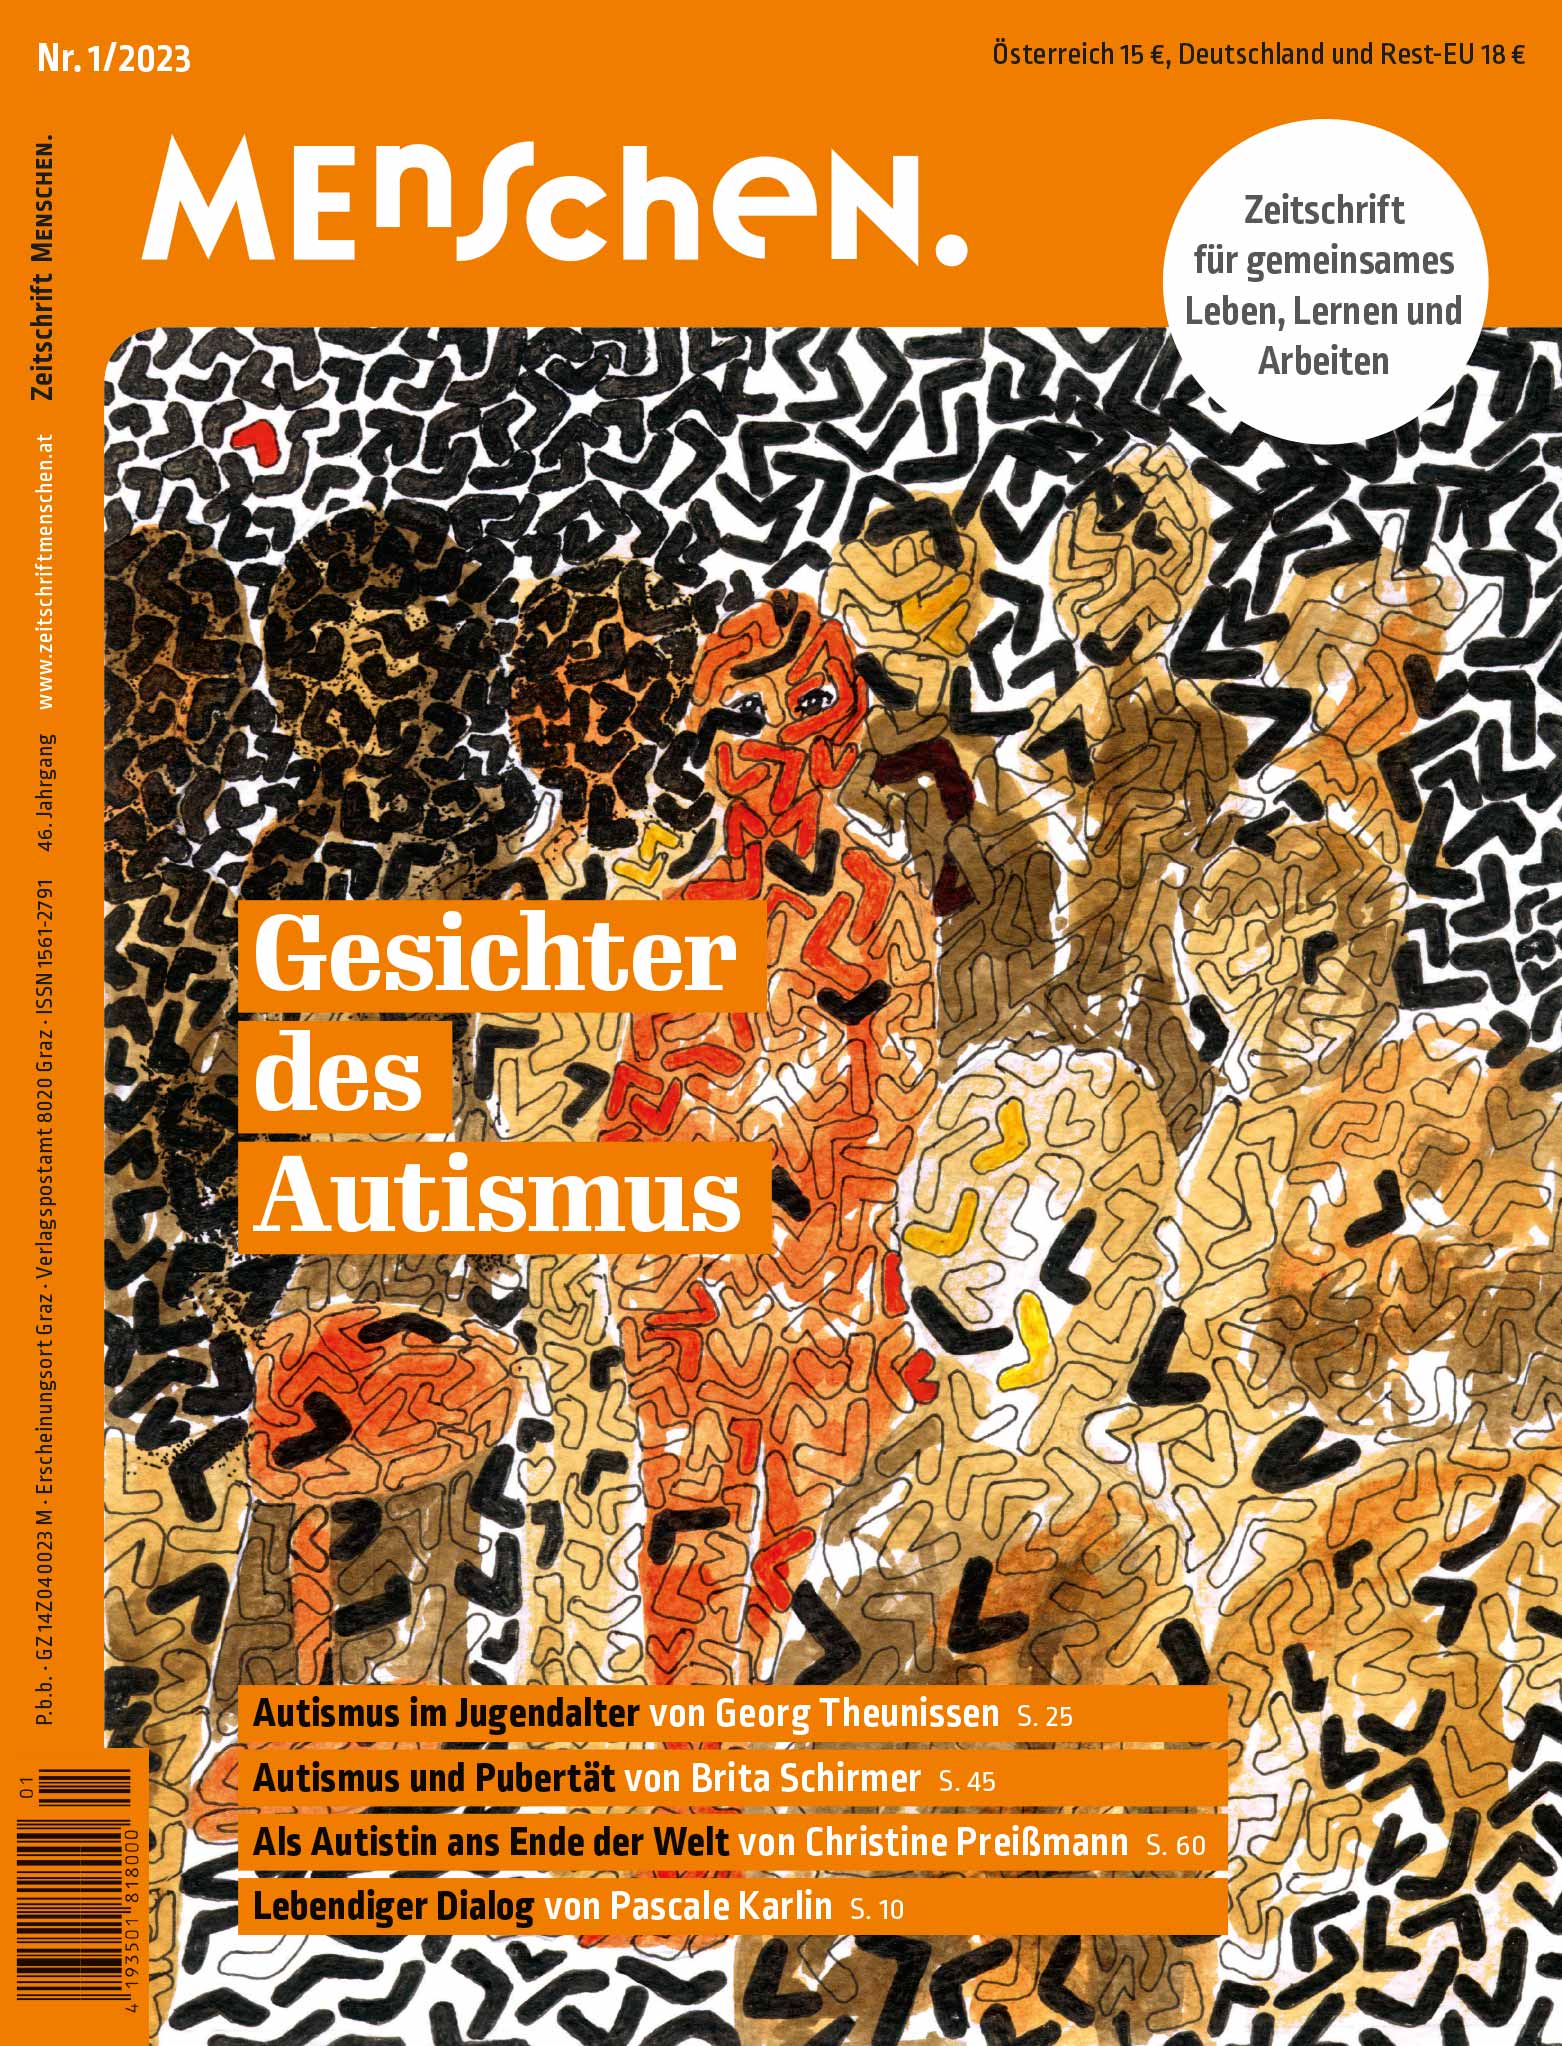 Titelbild der Zeitschrift BEHINDERTE MENSCHEN, Ausgabe 1/2023 "Gesichter des Autismus"